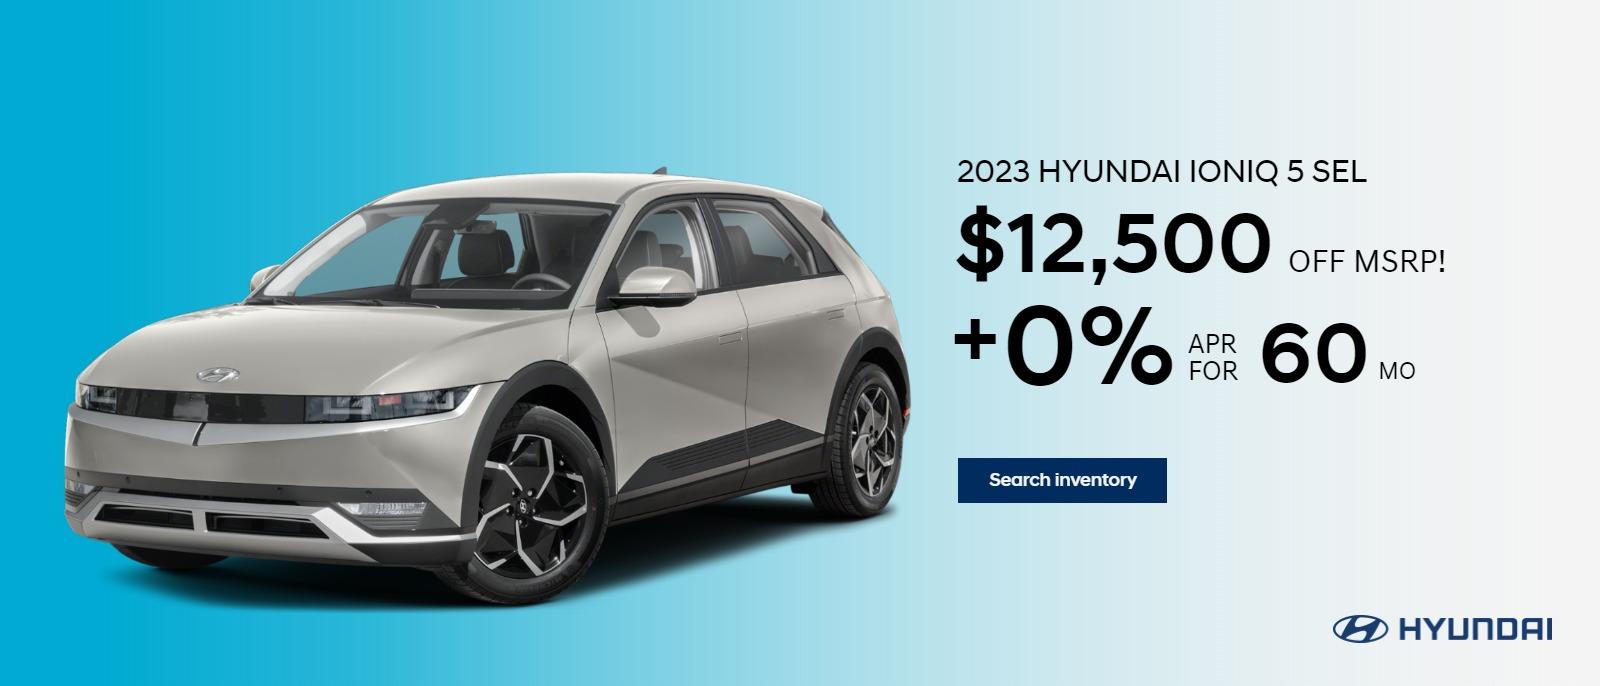 2023 Hyundai Ioniq 5 SEL
$12,500 OFF MSRP!
+ 0% for 60mo